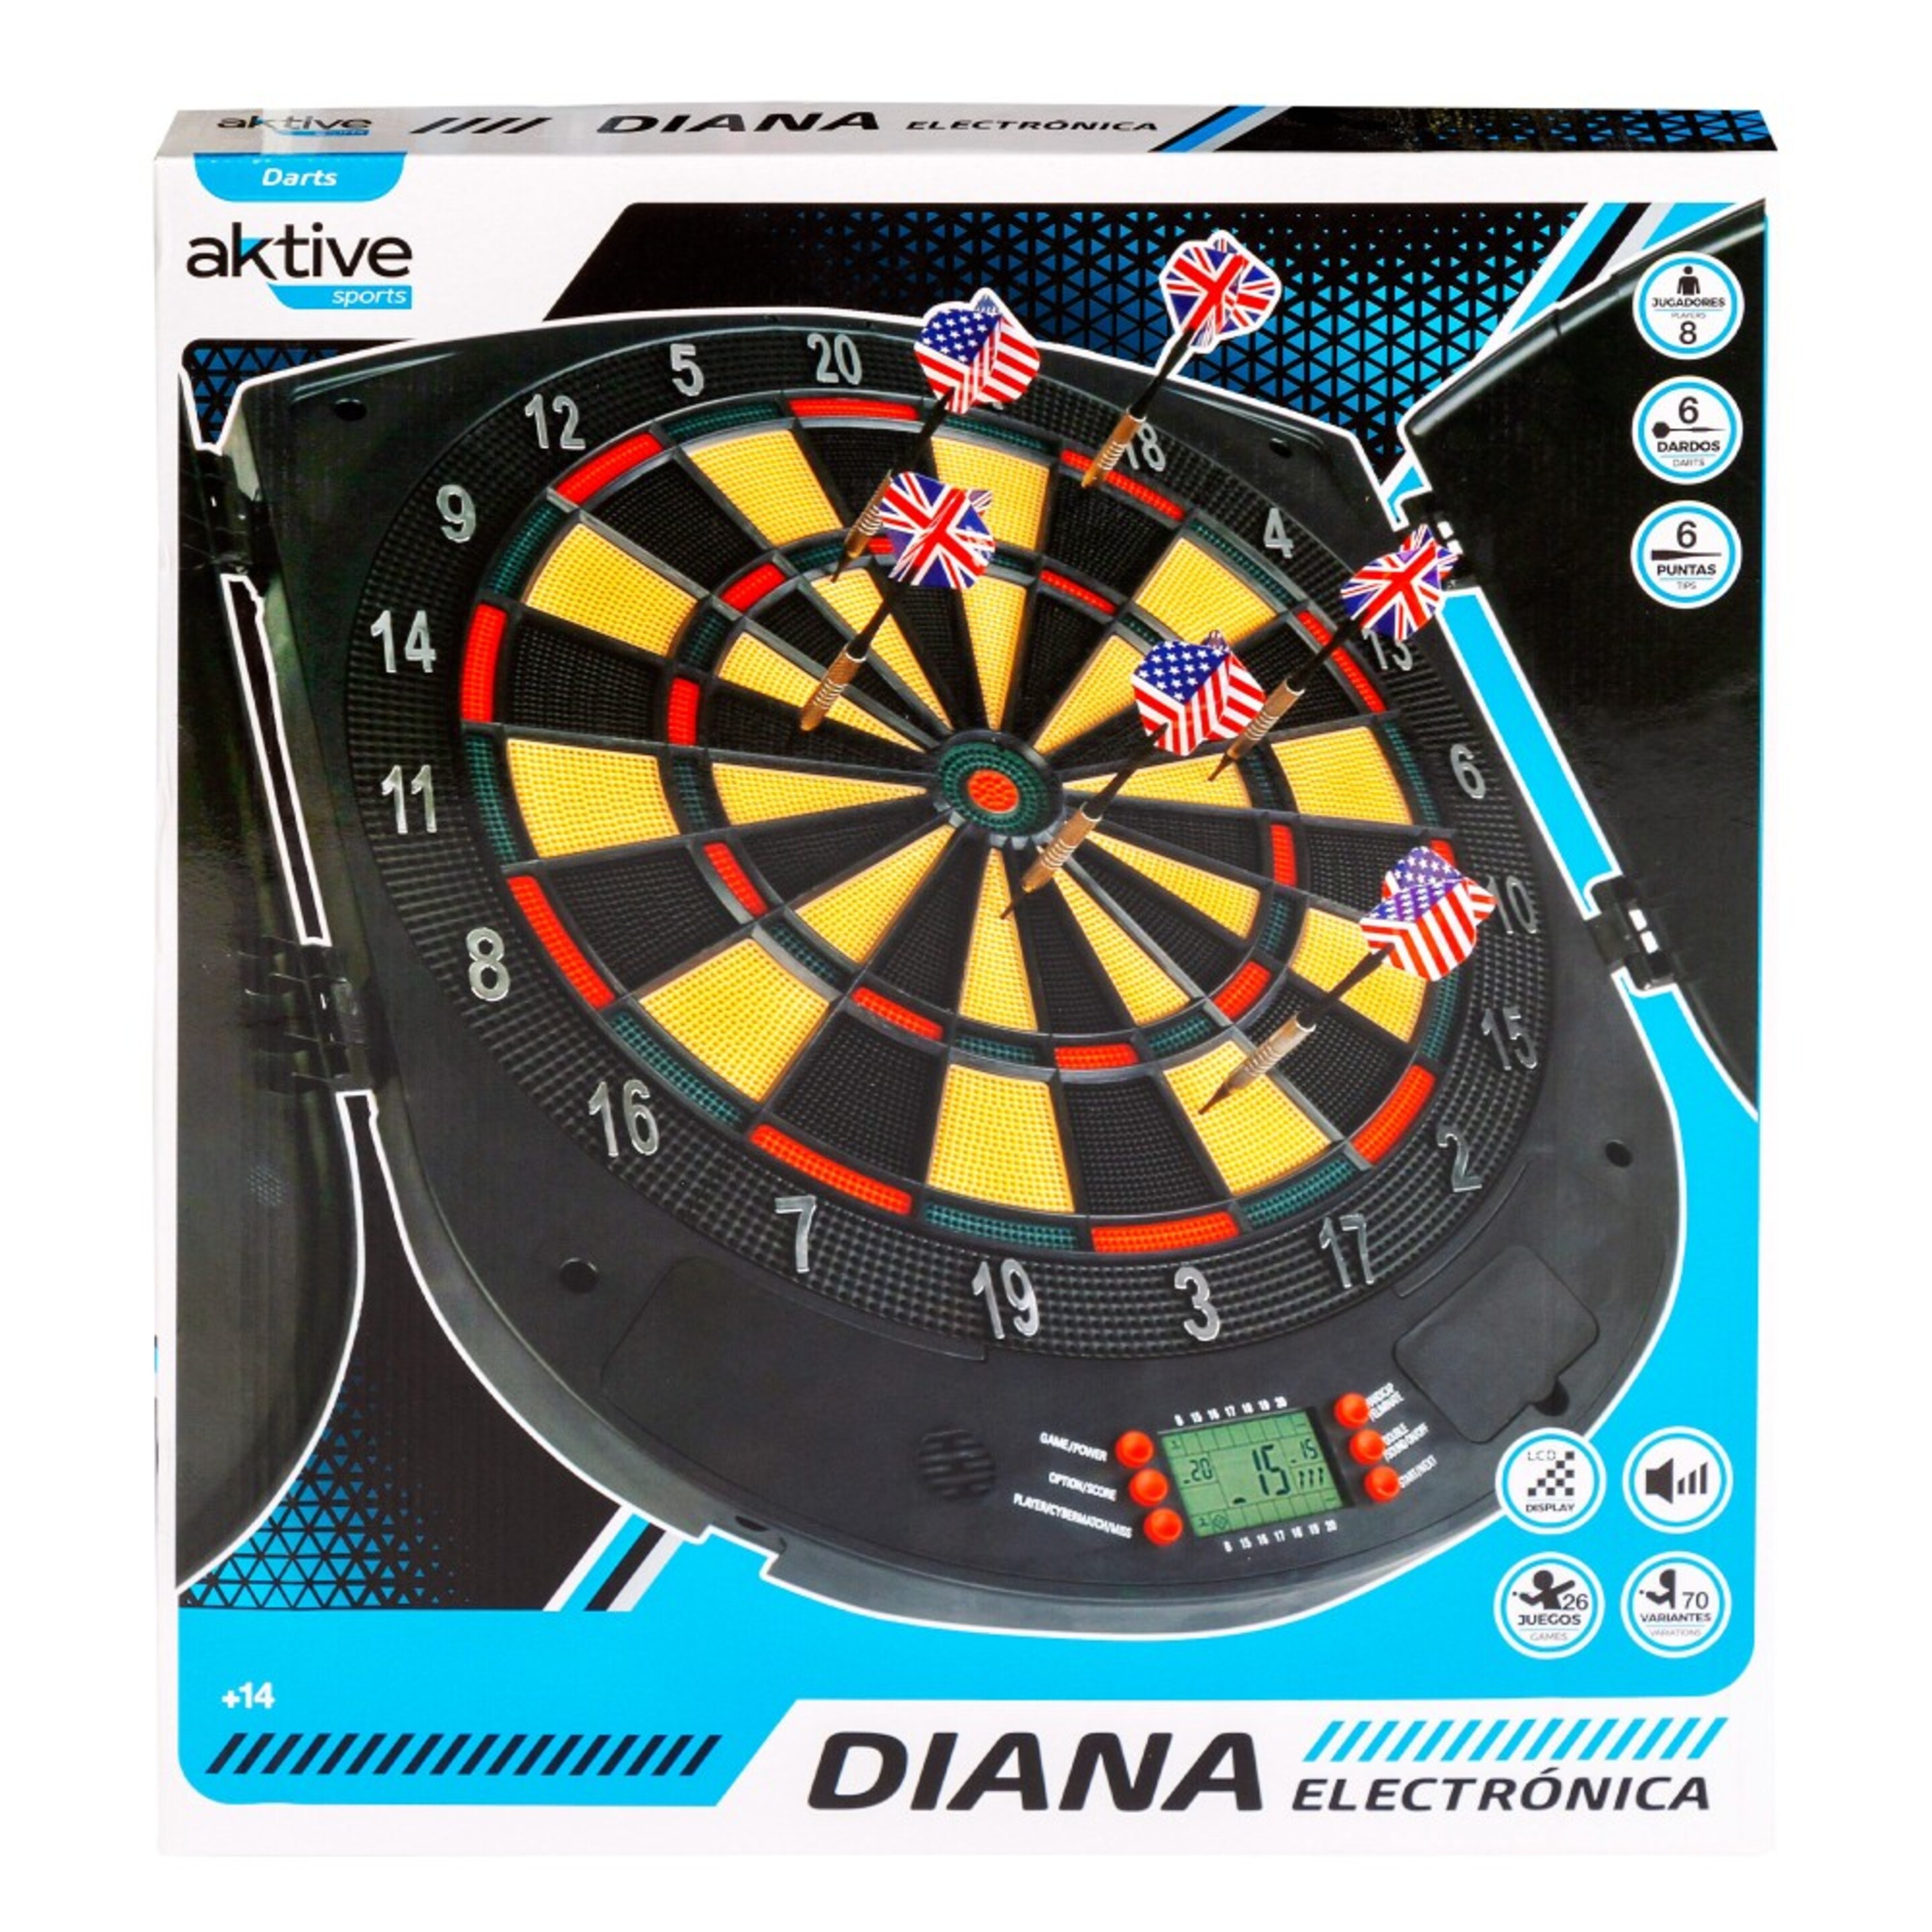 Diana Electrónica 50x45 Cm Con 6 Dardos Aktive - Multicolor  MKP